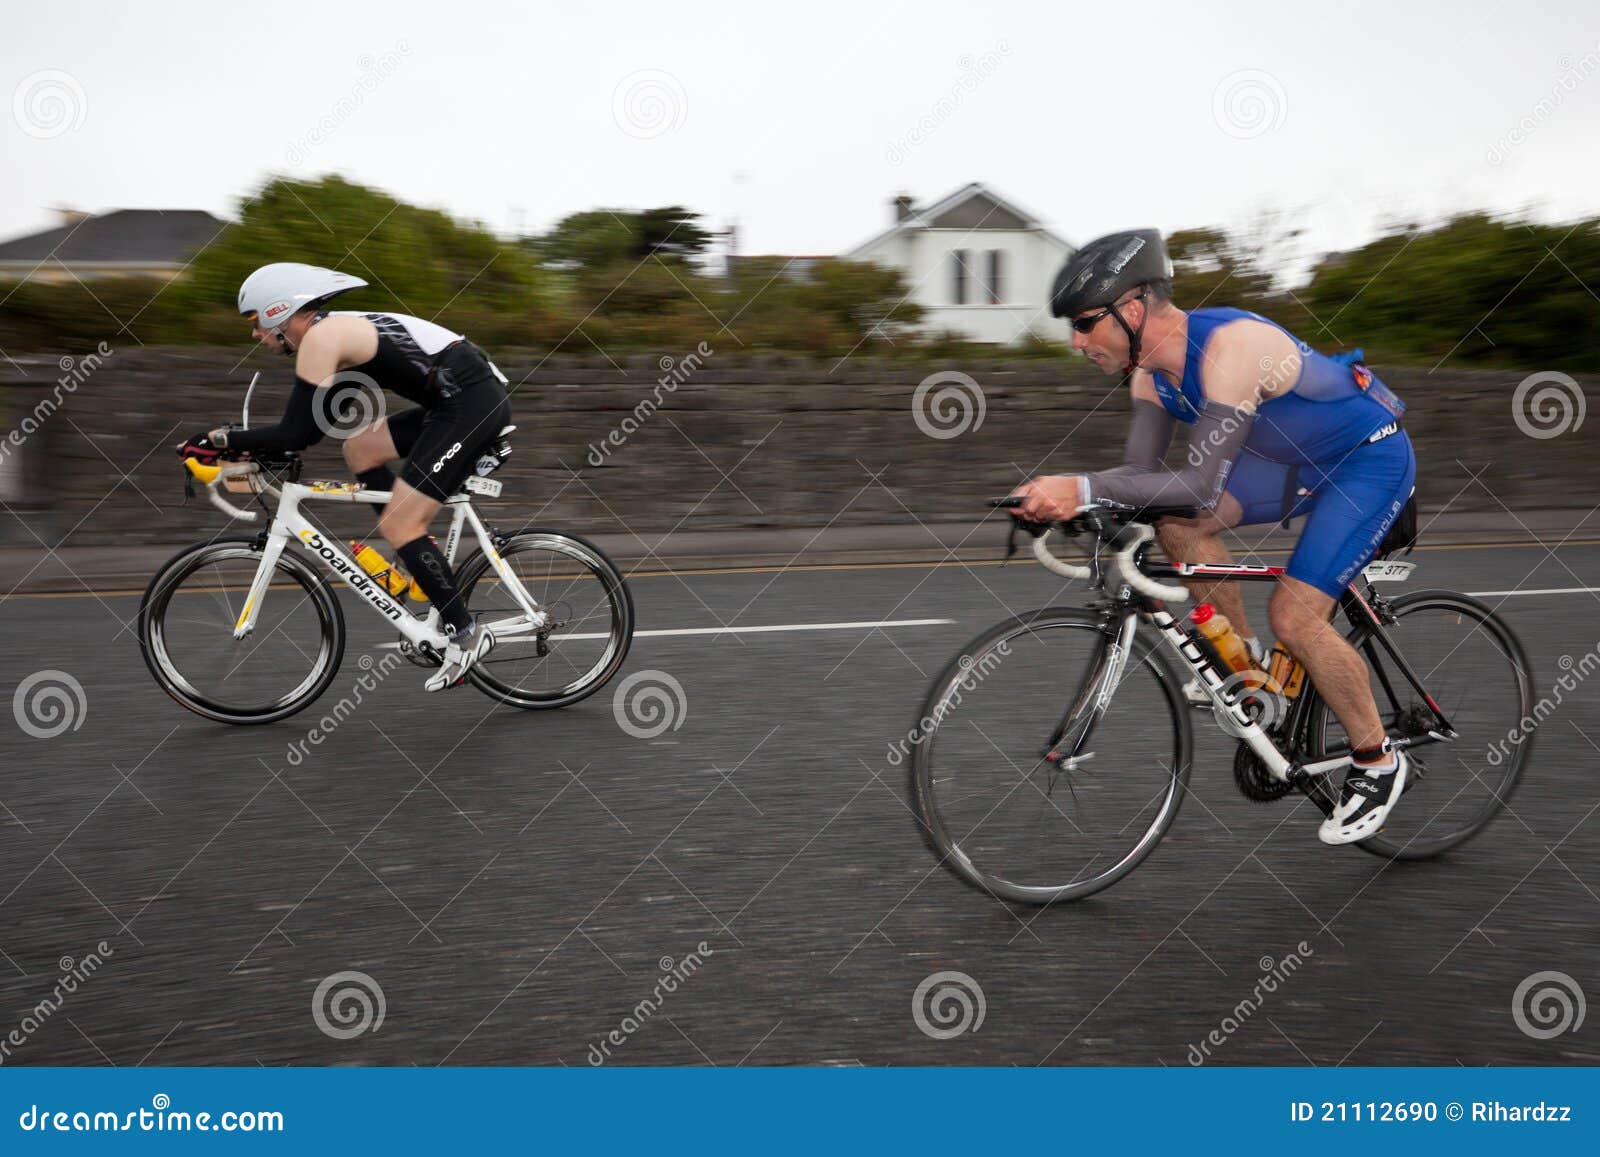 Technika zasłony cyklistów błyskowa panning sync technika. 4 311 377 2011 Alan współzawodniczą wydania pierwszy Galway szarego Ireland żelaza mężczyzna o Wrzesień Stephen toole triathlon